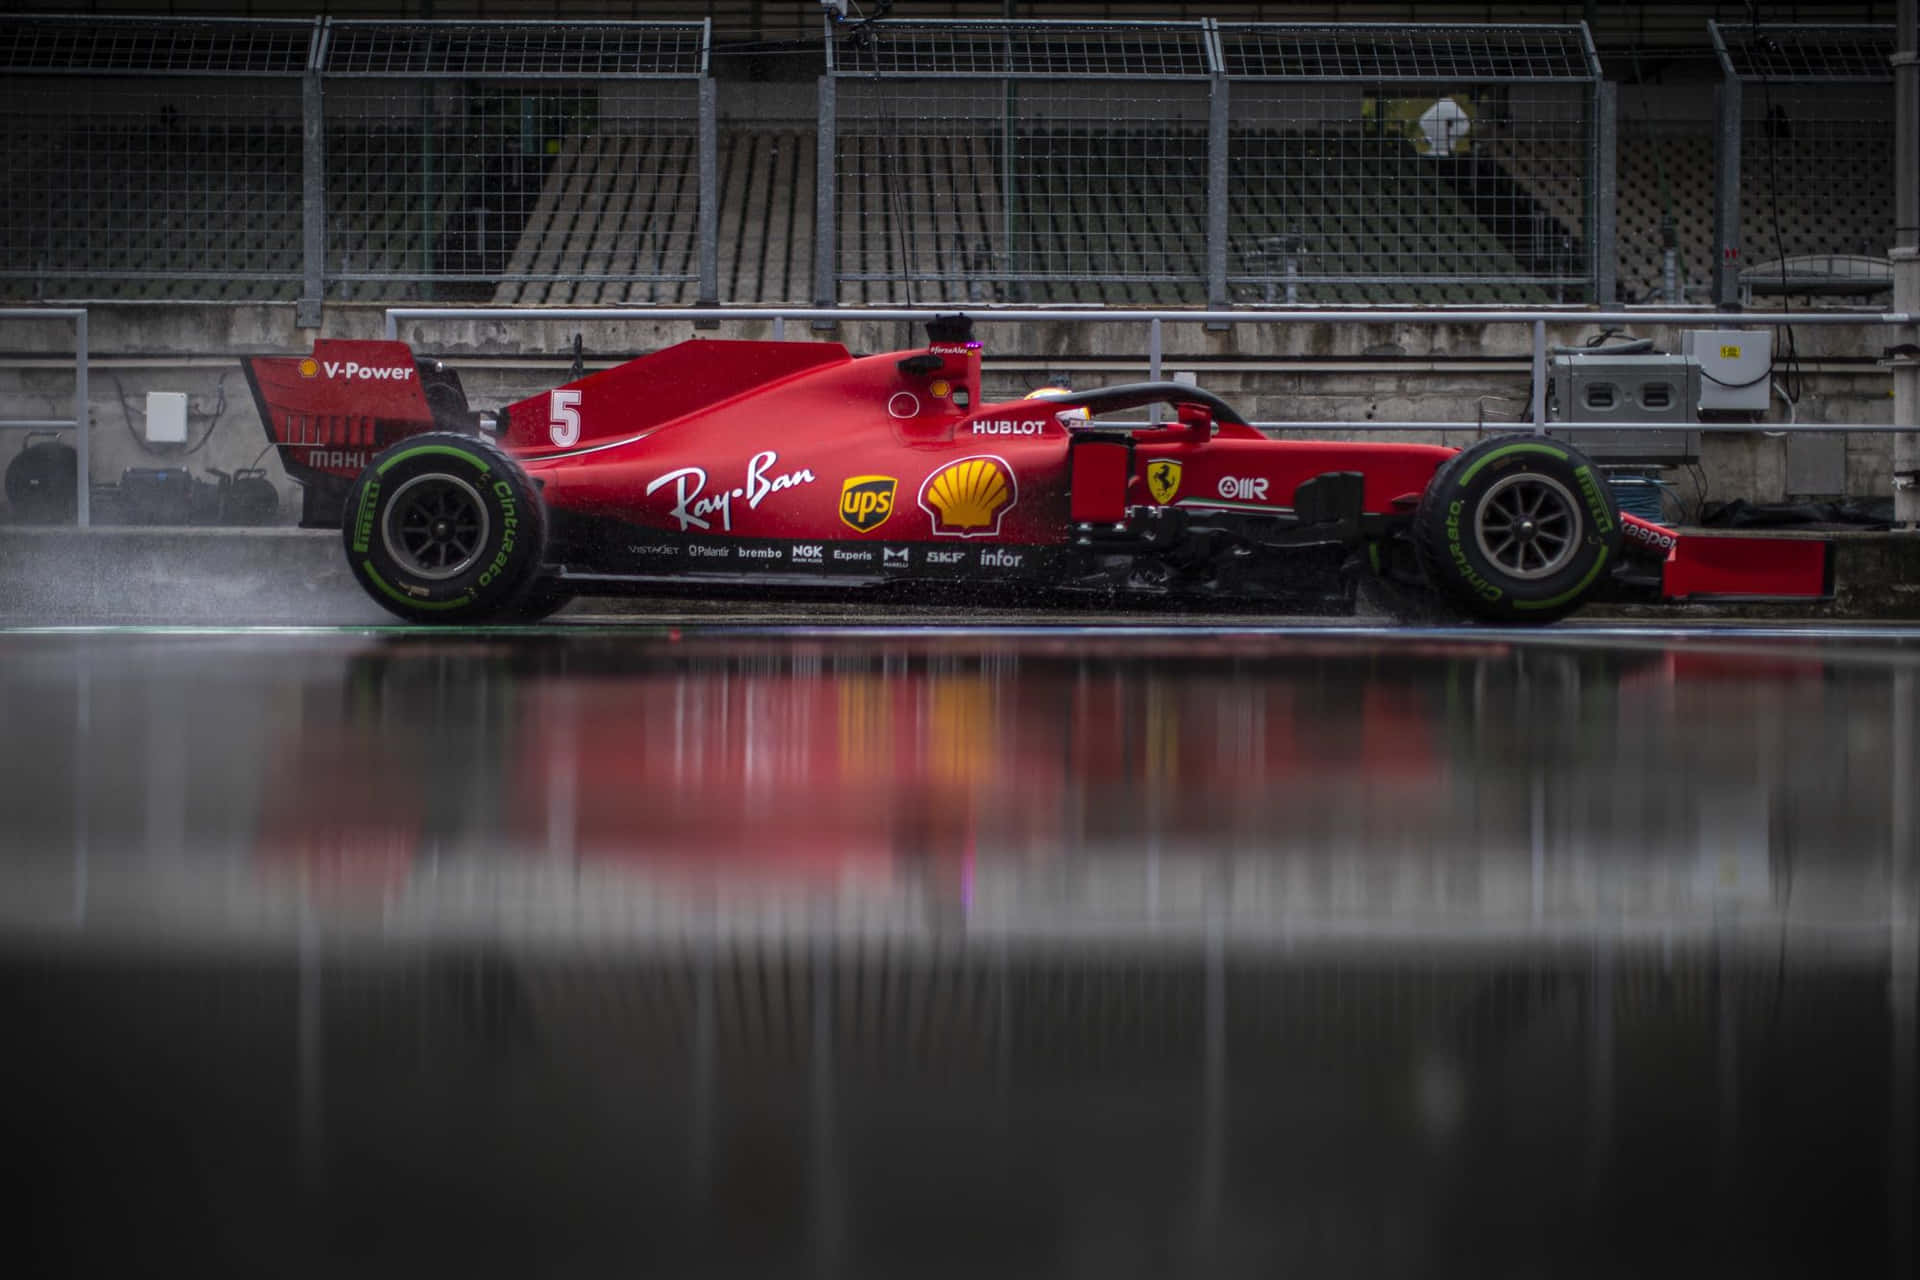 Download Ferrari F1 Car On A Wet Track | Wallpapers.com